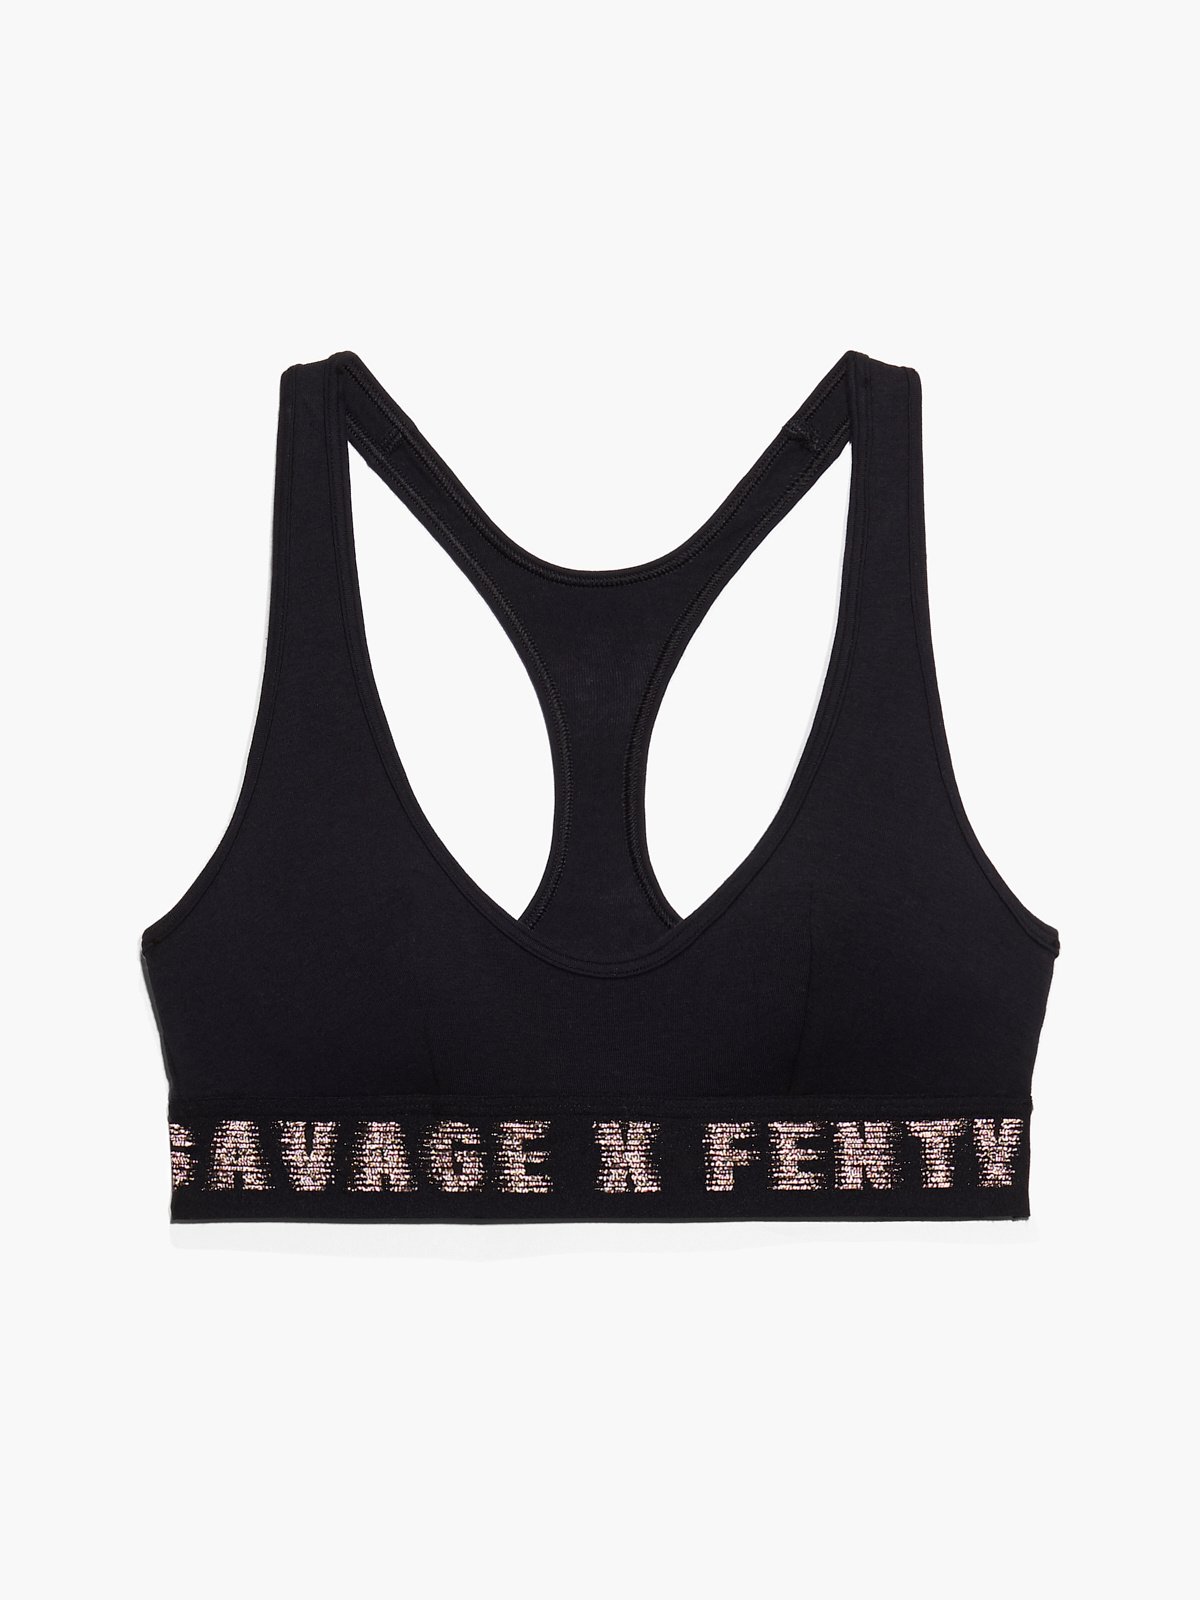 Savage x Fenty curvy cotton logo bralette in black